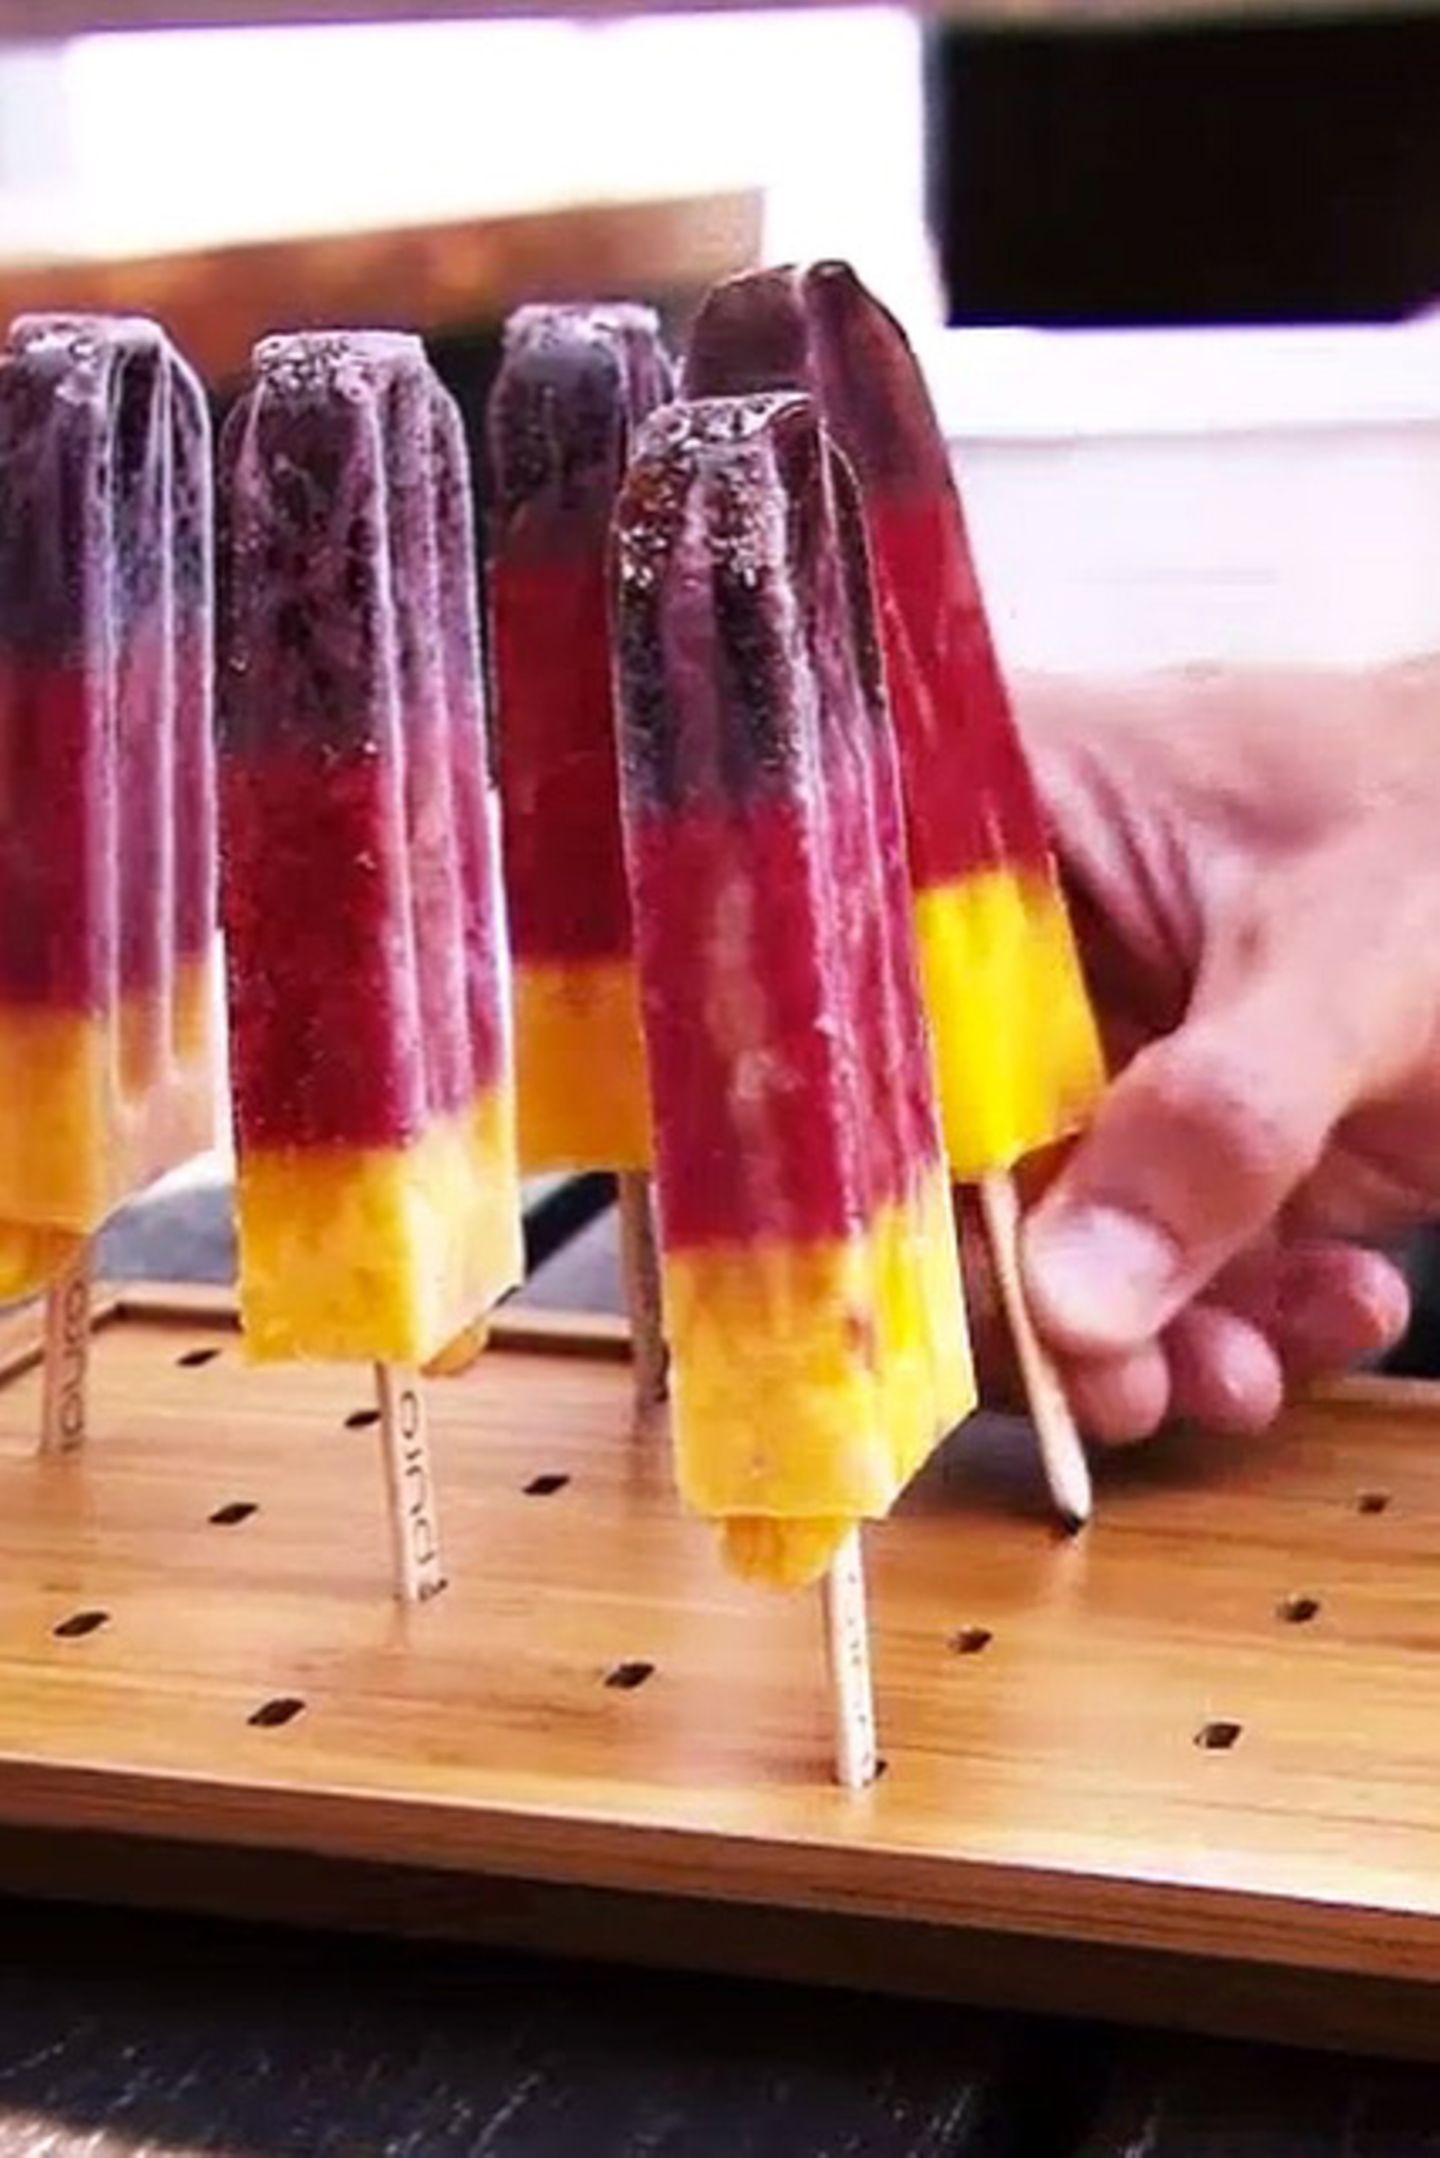 Abkühlung gefällig? Die puro ice pops erfrischen uns zur WM in einer ganz besonders schönen Farbkombination: Schwarz, Rot, Gold oder auch Acai-Beere, Erdbeere und Mango! 